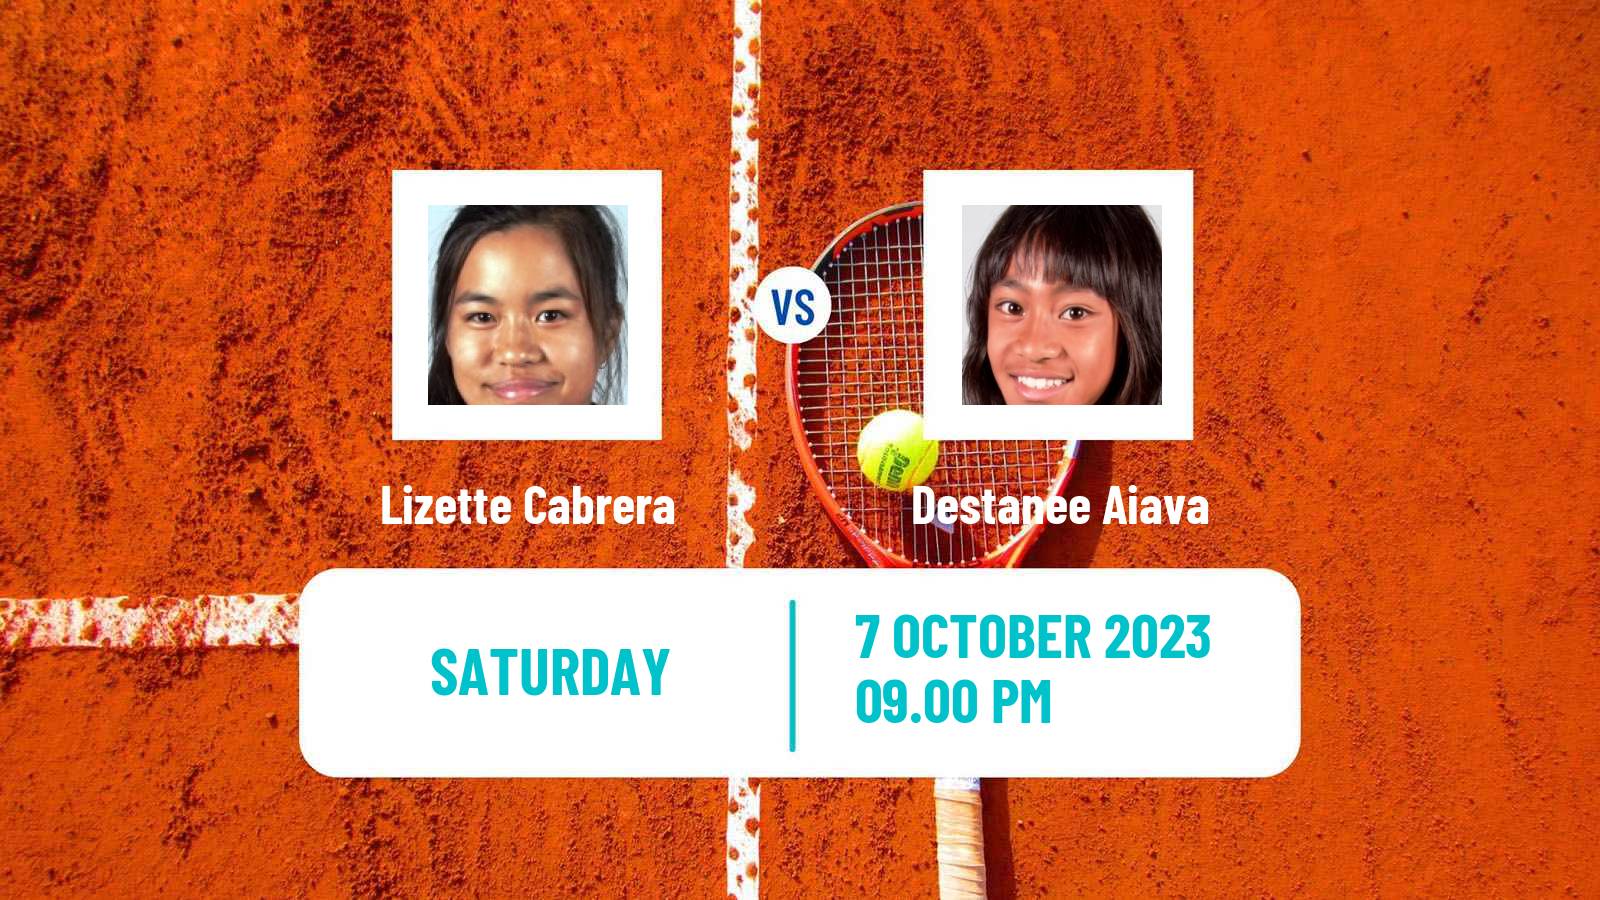 Tennis ITF W25 Cairns Women Lizette Cabrera - Destanee Aiava